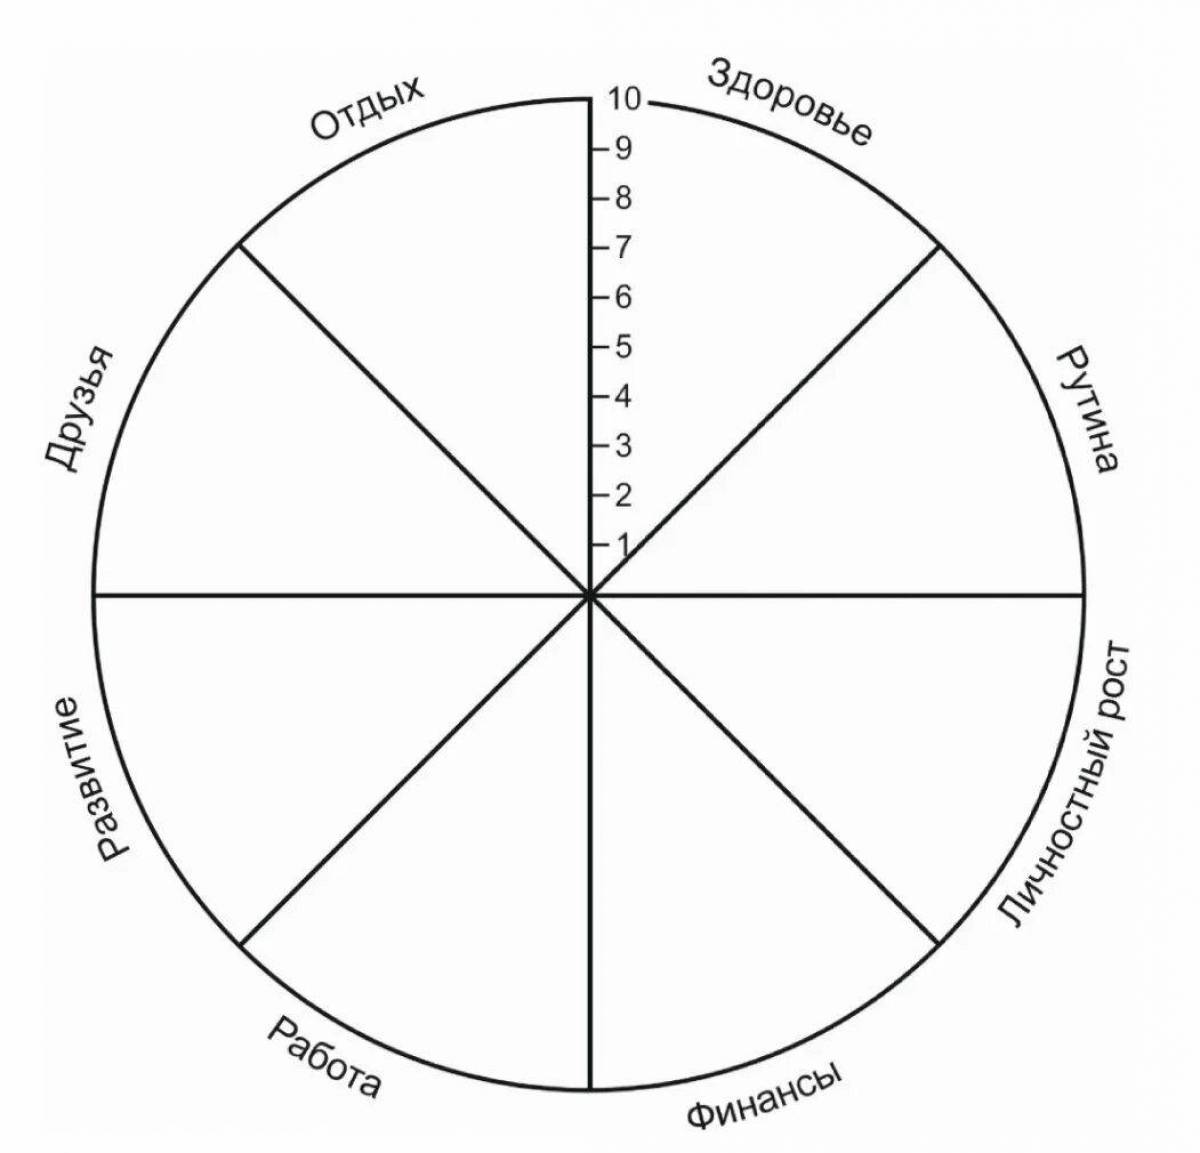 Круг надо ли. Колесо жизненного баланса 8 сфер. Схема колеса жизненного баланса. Коле/о жизненного баланса. Колесо жизни, баланс жизни (8 основных сфер).